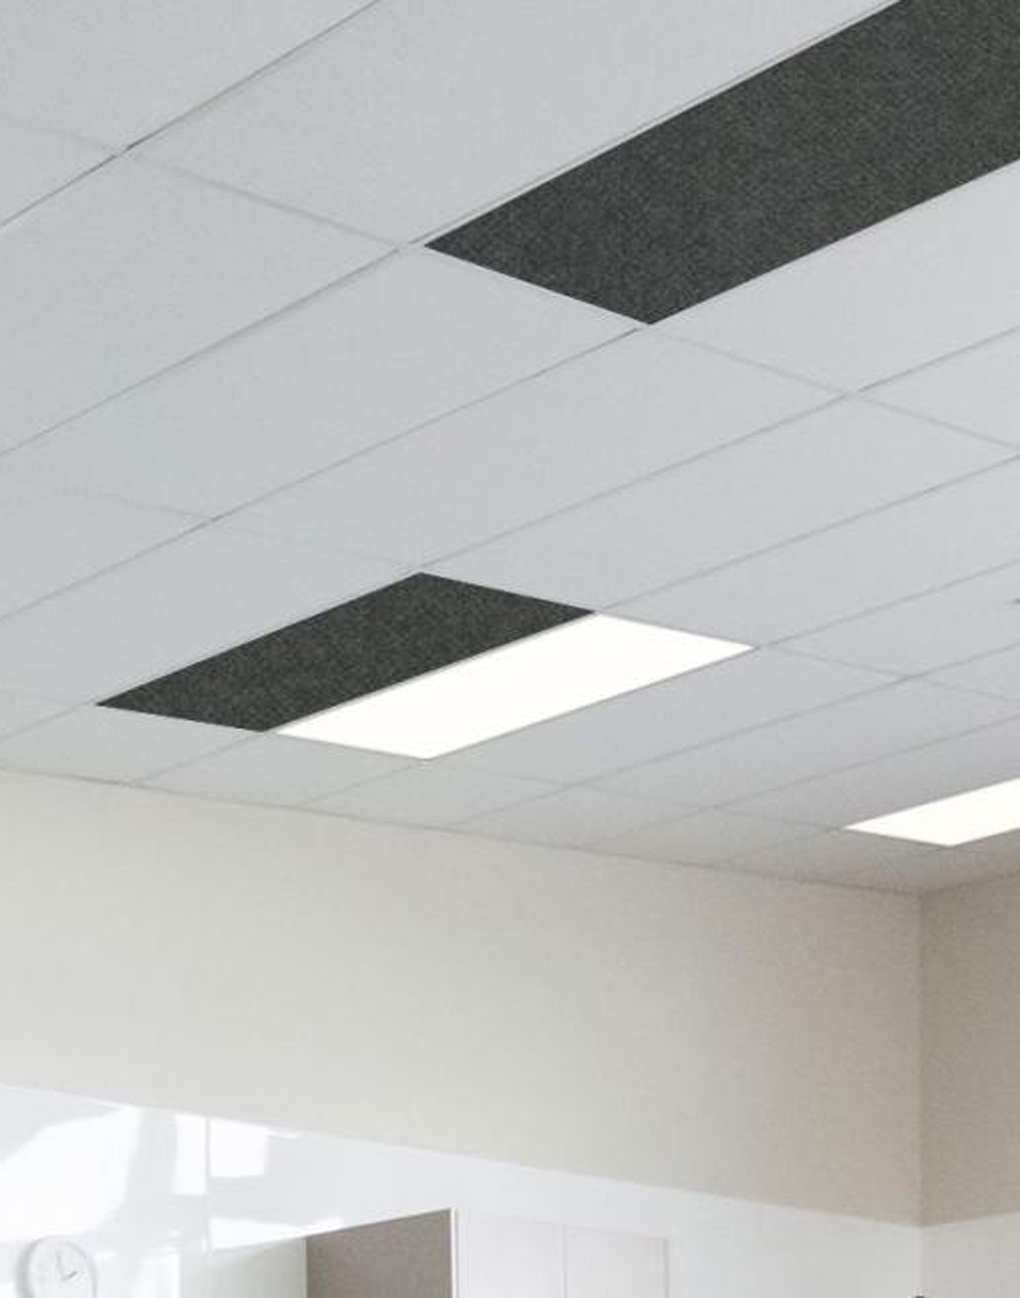 Buy Autex Quietspace Accent Insulation - Interior Acoustics Ceiling Insulation